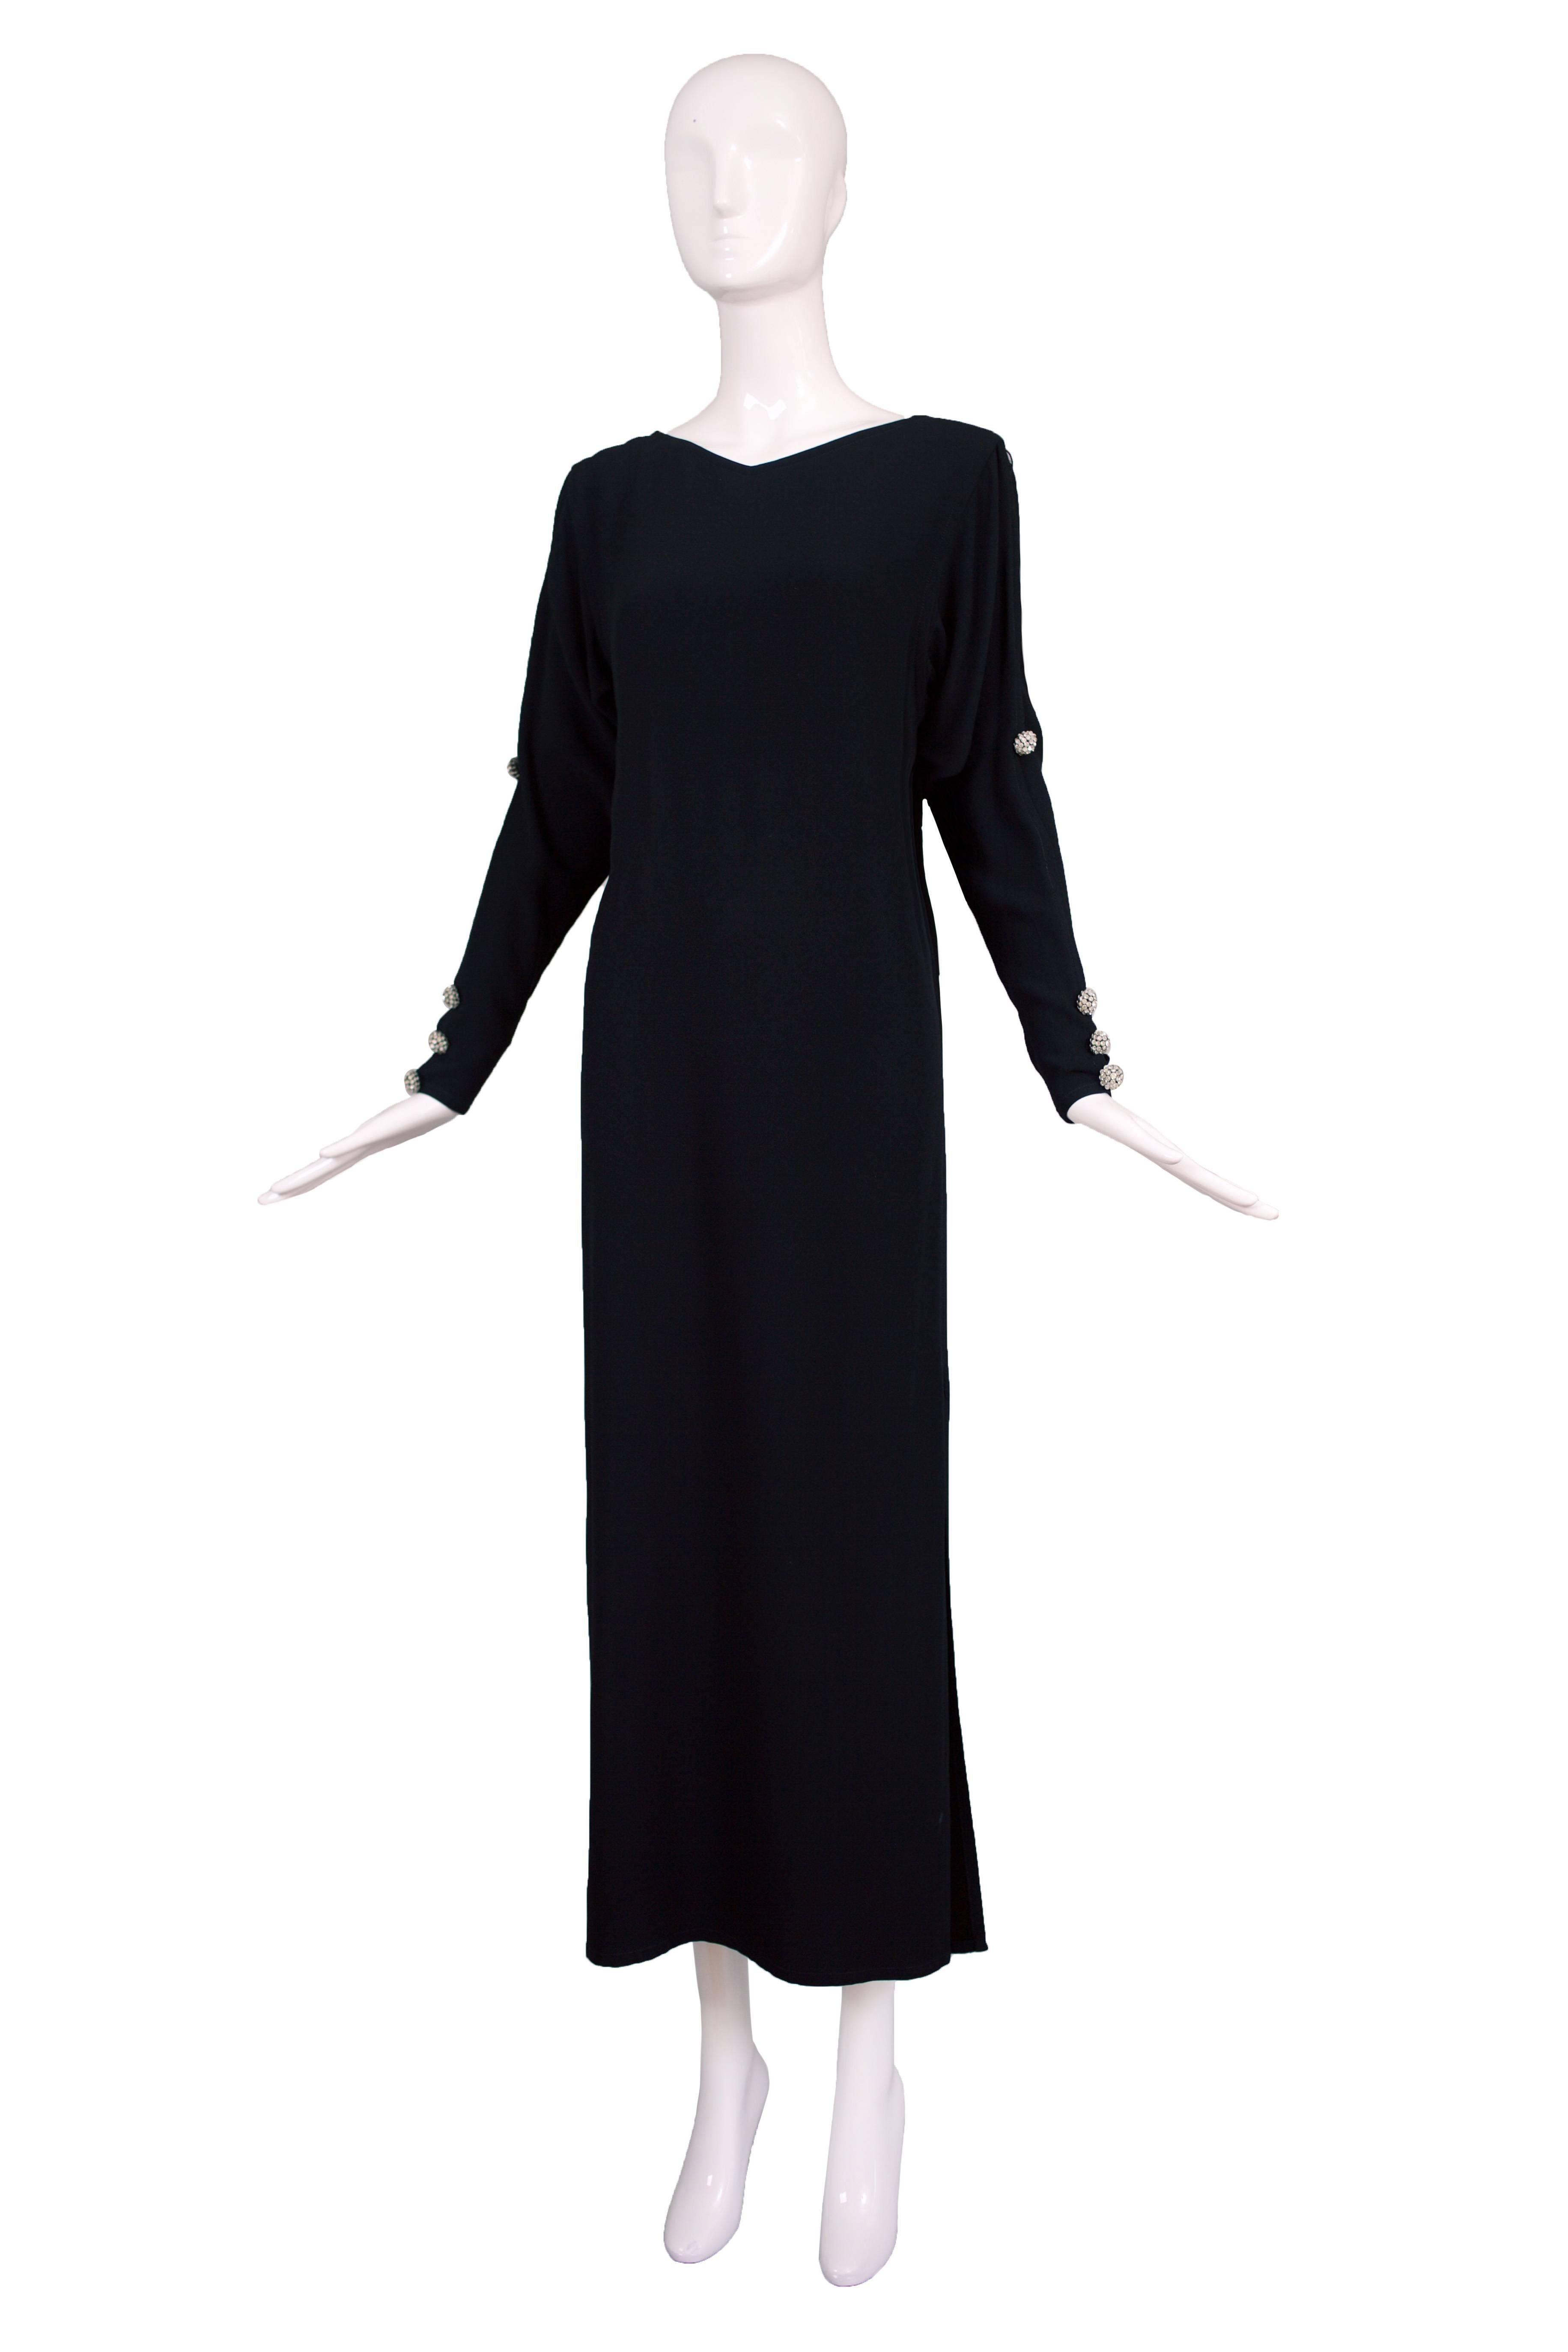 Robe de soirée Yves Saint Laurent en crêpe de soie noir, fin des années 70/début des années 80, manches longues, fentes sur les deux côtés et boutons décoratifs en cristal aux bras et aux manches. En parfait état. Taille de l'étiquette 42. Veuillez